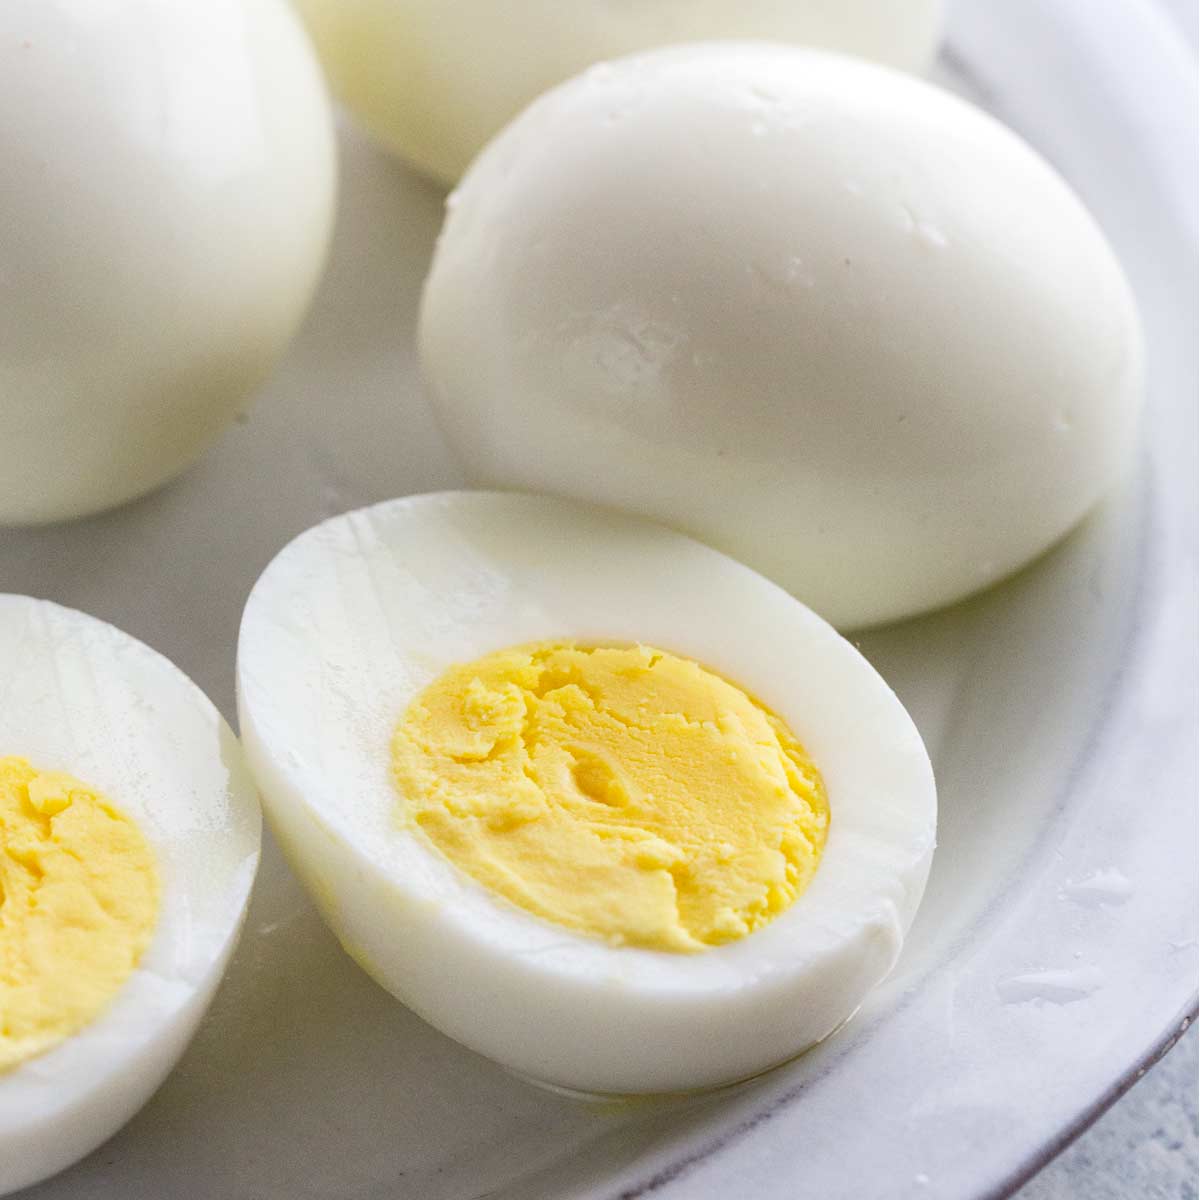 Luộc trứng, thêm vài giọt này vỏ tự động bong ra bất ngờ, trứng ngon mềm thơm - 5